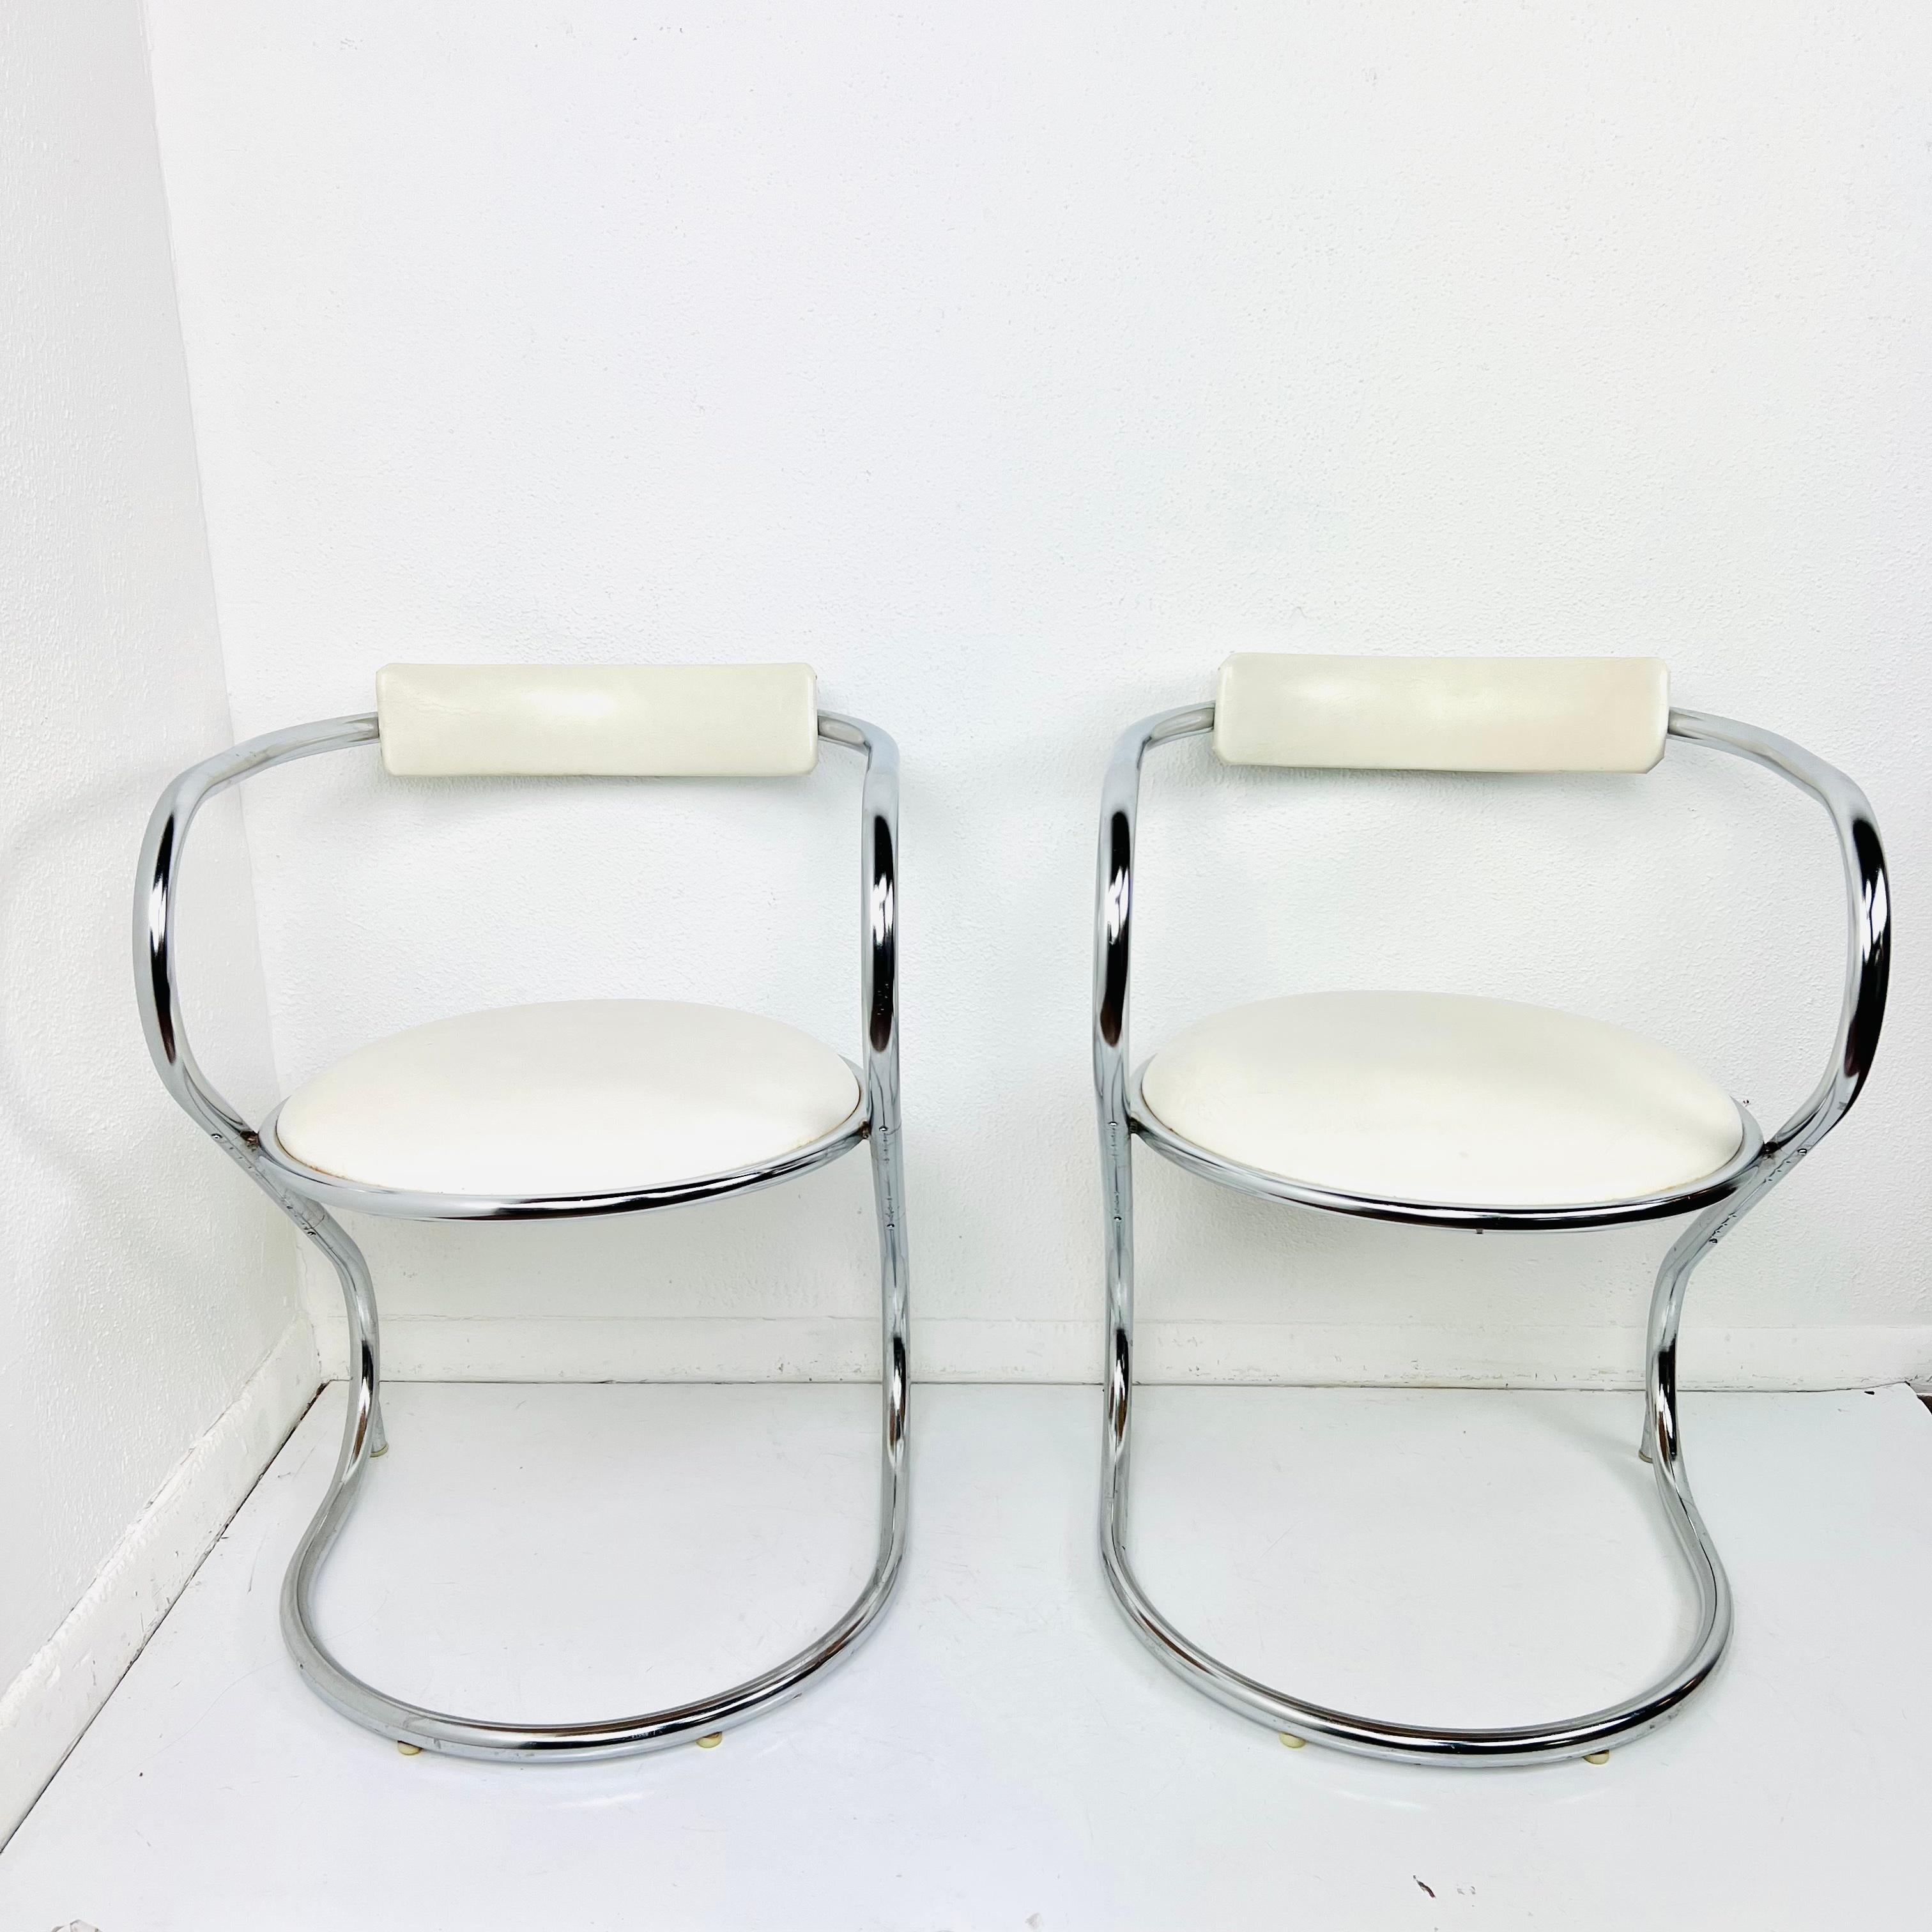 Paire de chaises chic au design en porte-à-faux, avec des piétements courbes en tubes d'acier et des assises arrondies avec des dossiers à barreaux minimaux pour garder la silhouette simple et épurée. Rembourré en vinyle blanc. L'état est bon, avec